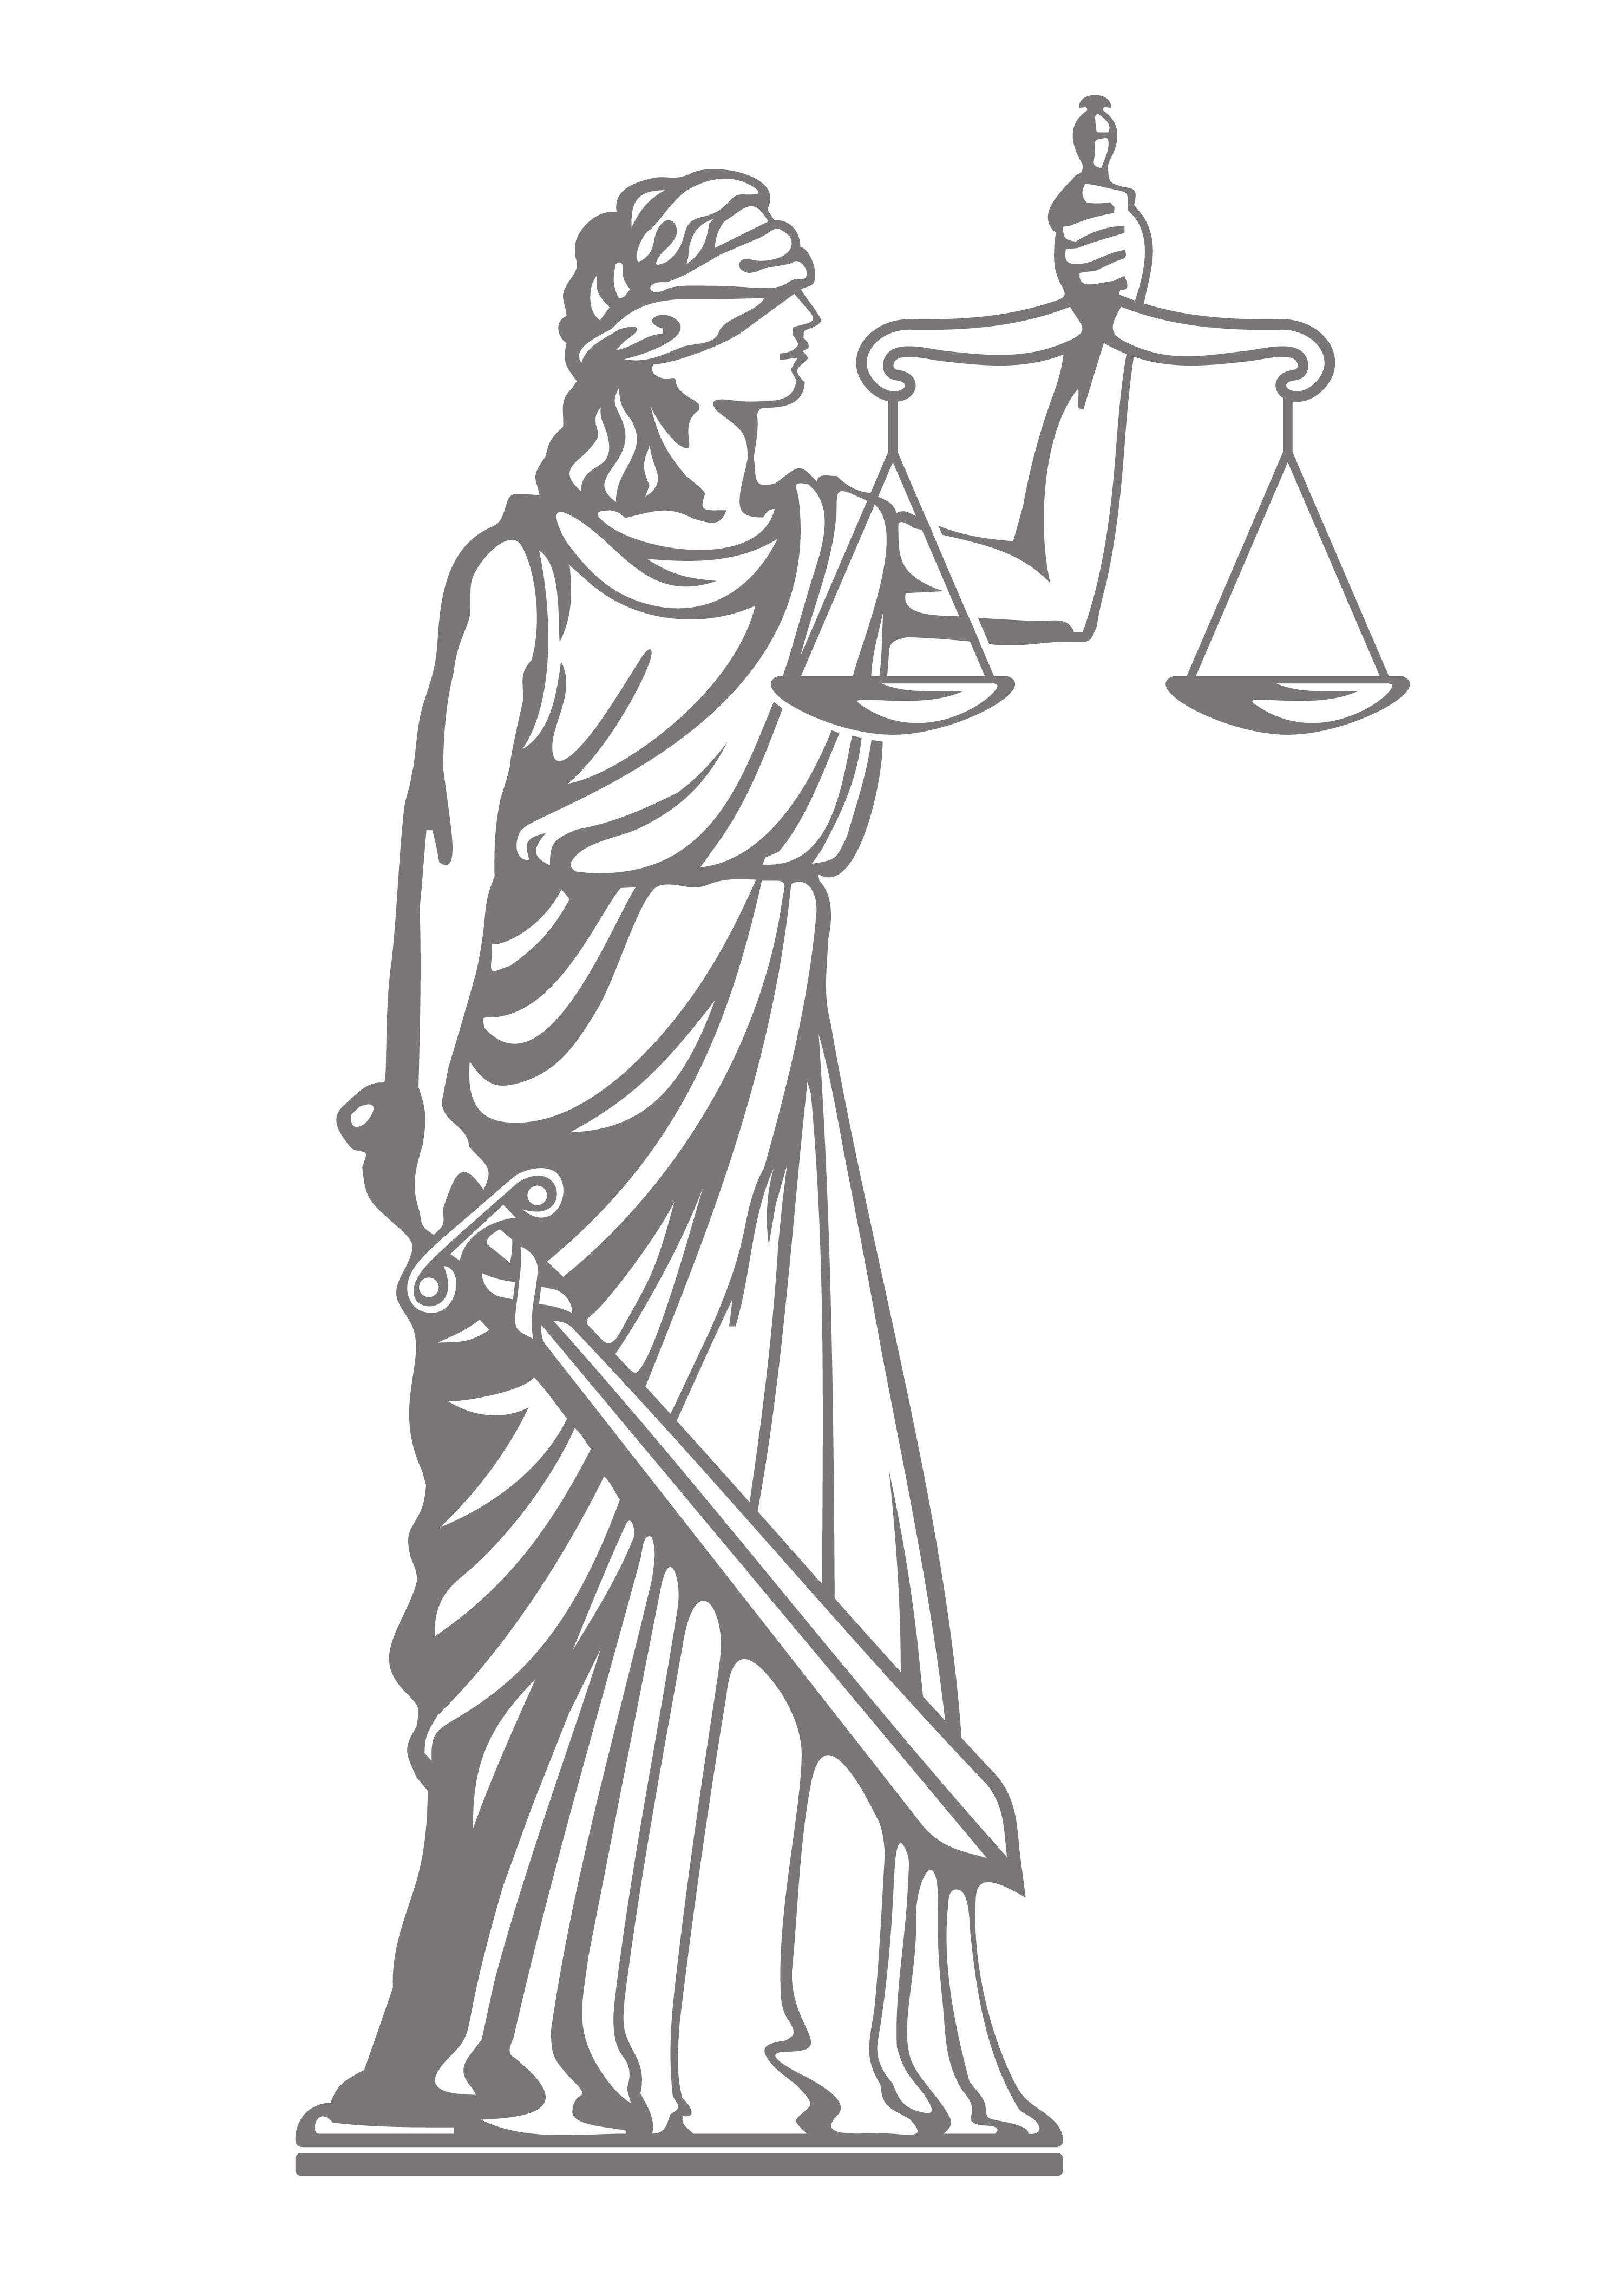 Justitia Mentoring - Chancenverbesserung und Gleichberechtigung